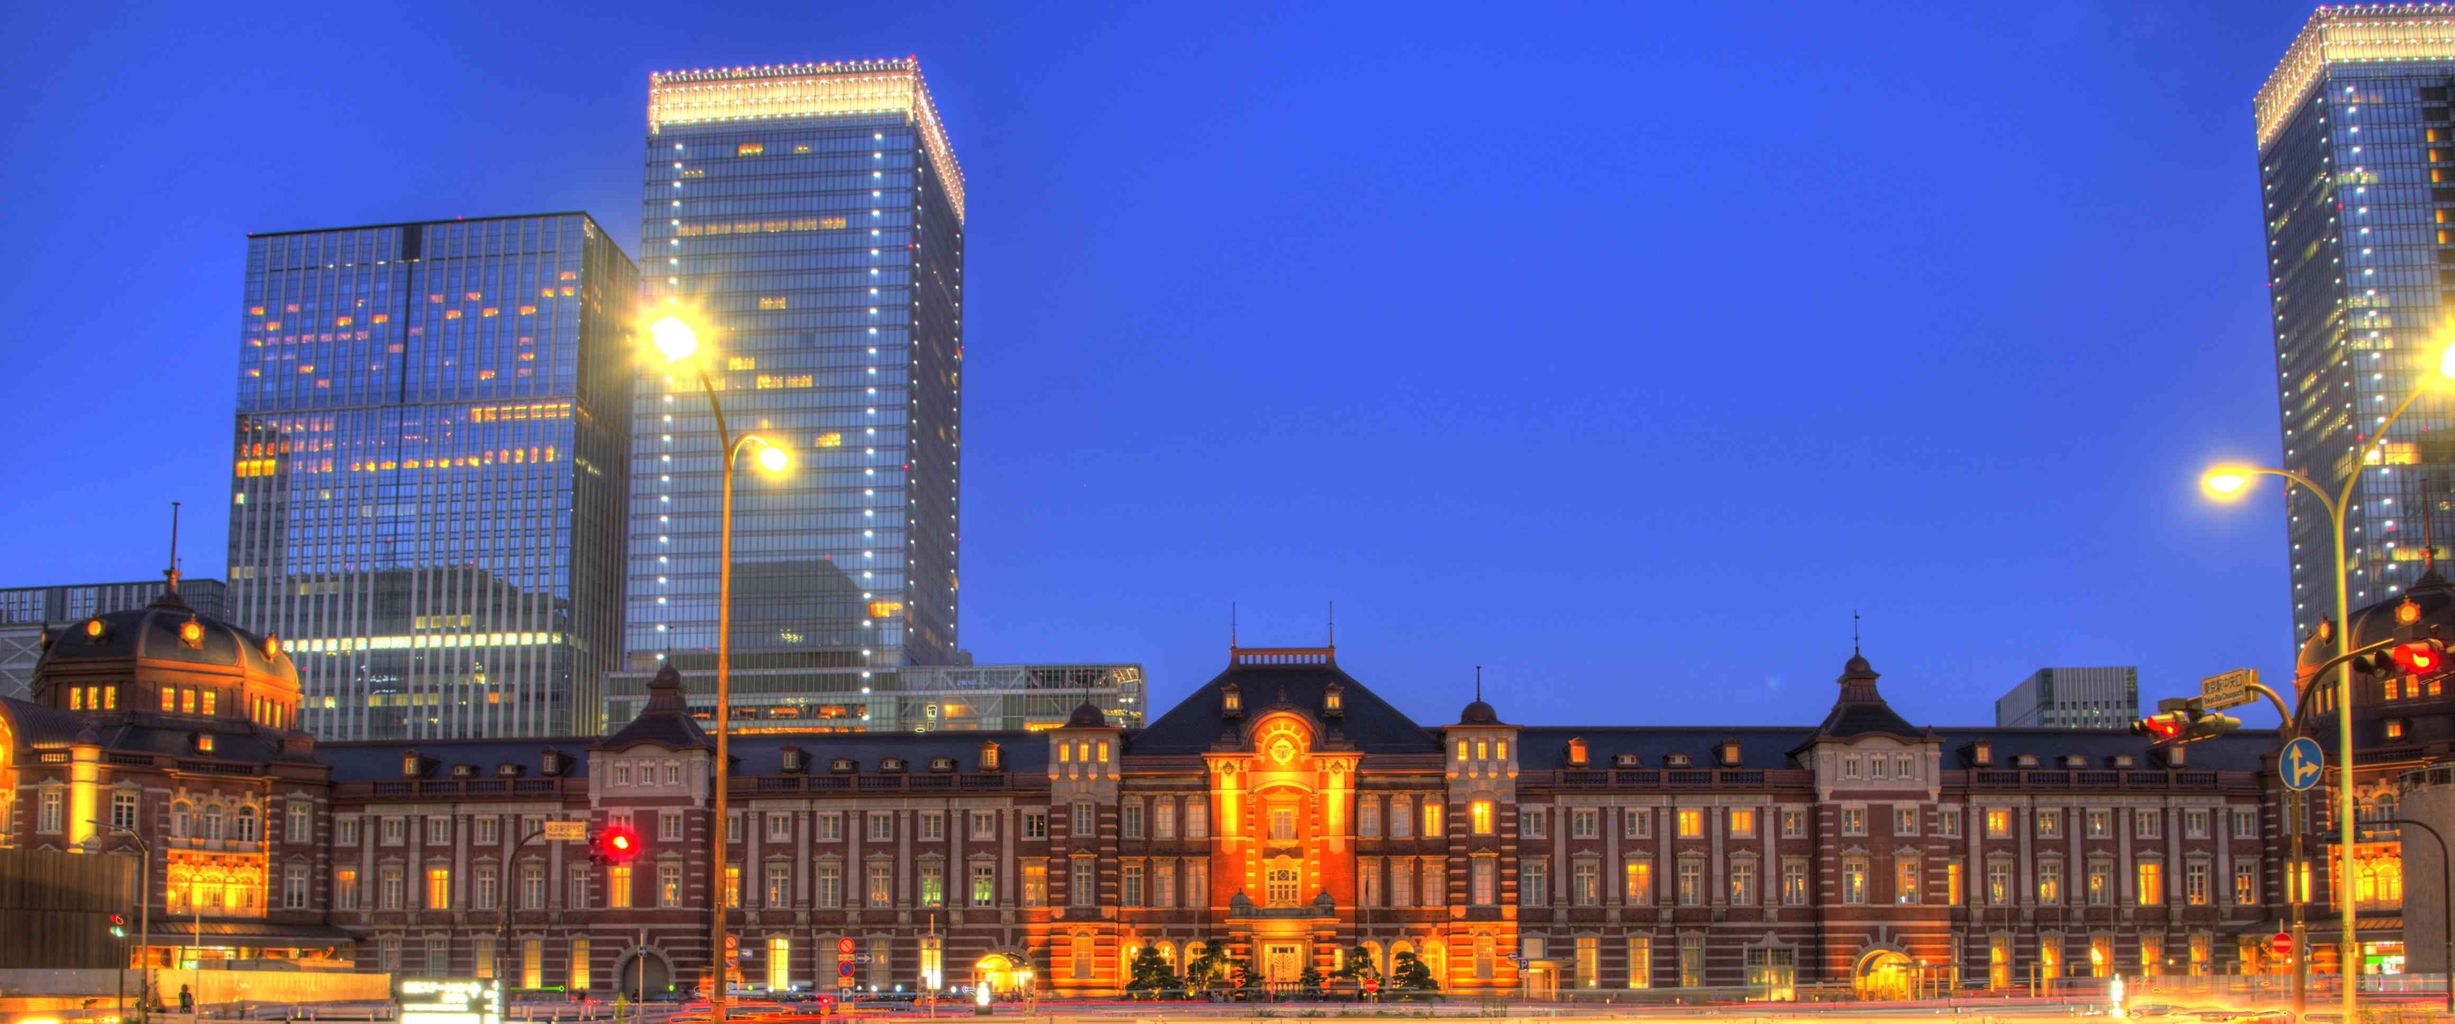 東京駅ライトアップ 画像素材探索日記